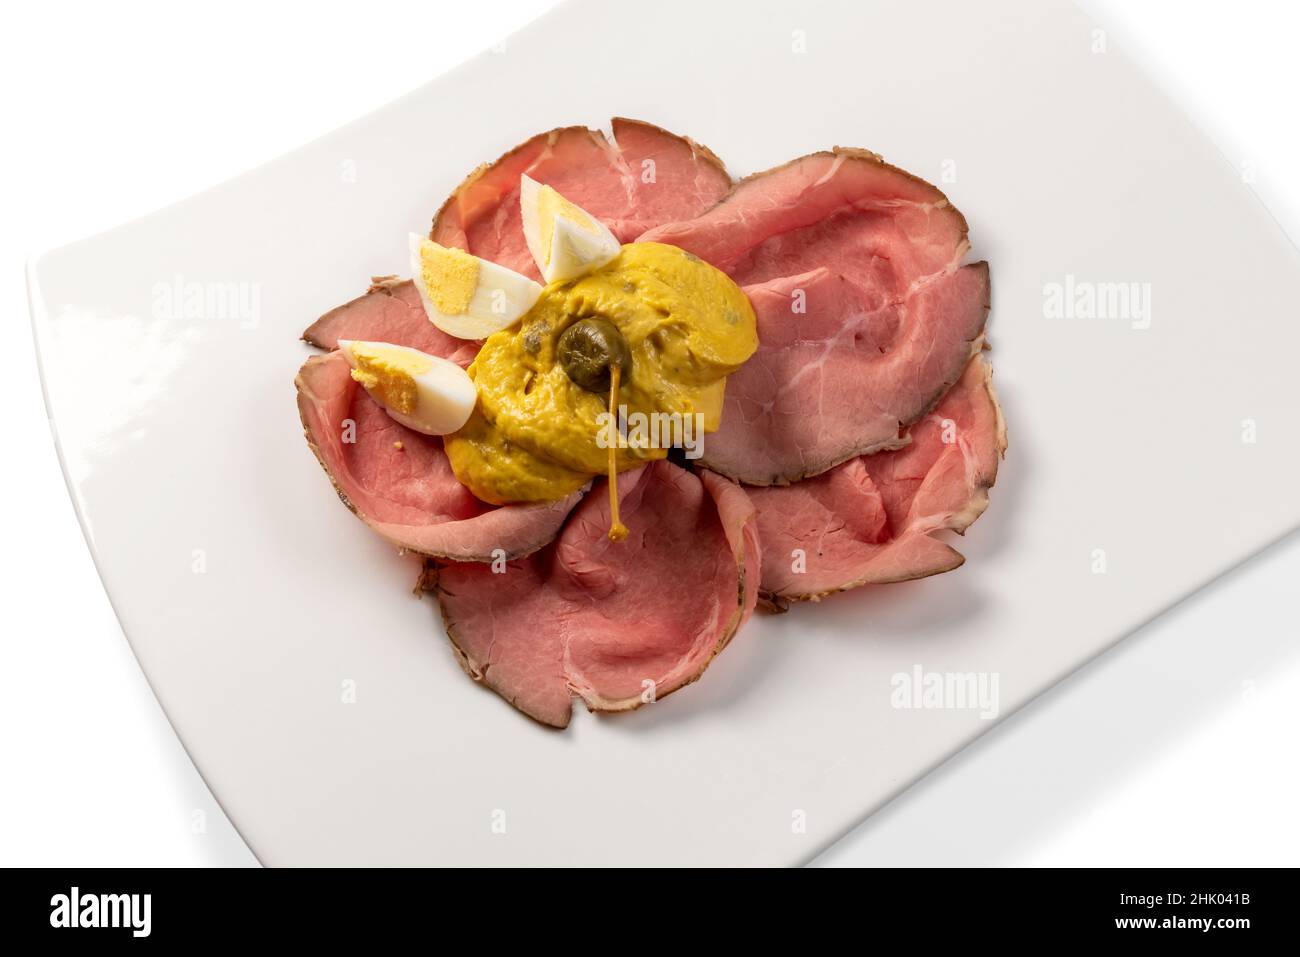 Vitello tonnato, typisch italienisches Roastbeef aus dem Piemont mit Thunfisch-Mayonnaise-Sauce und Kapern, Scheiben in weißer Platte mit gekochten Eierscheiben und Kapern Stockfoto